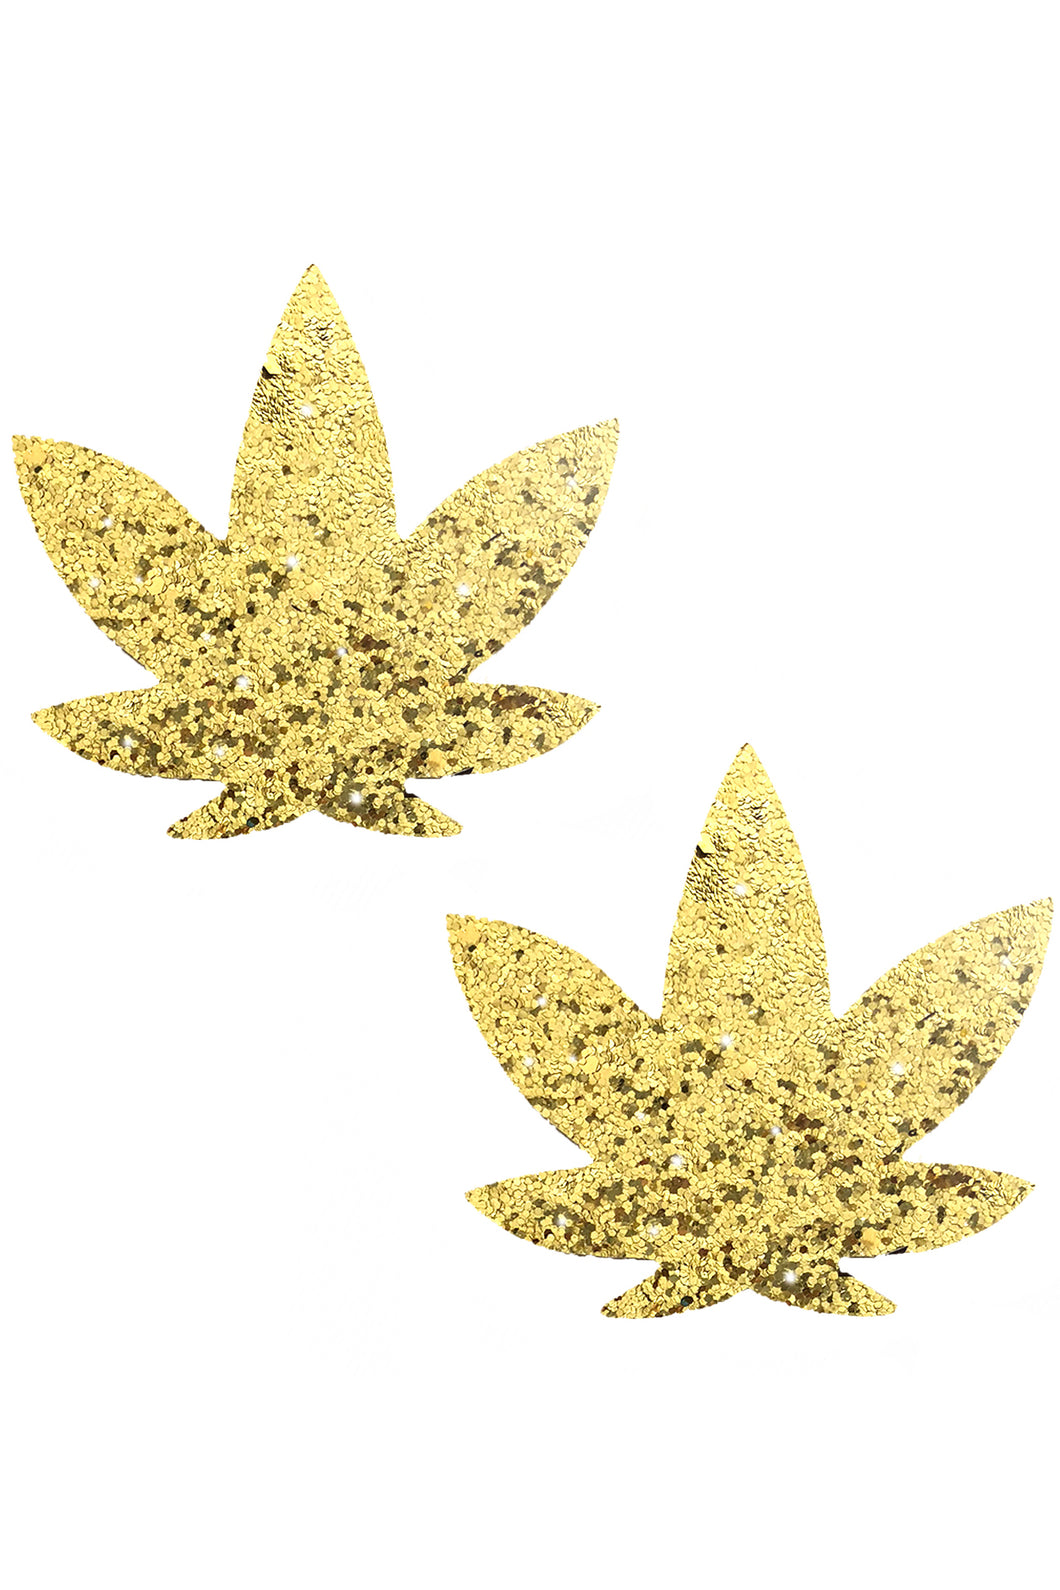 Super Sparkle Gold Glitter Dope AF Weed Leaf Pasties